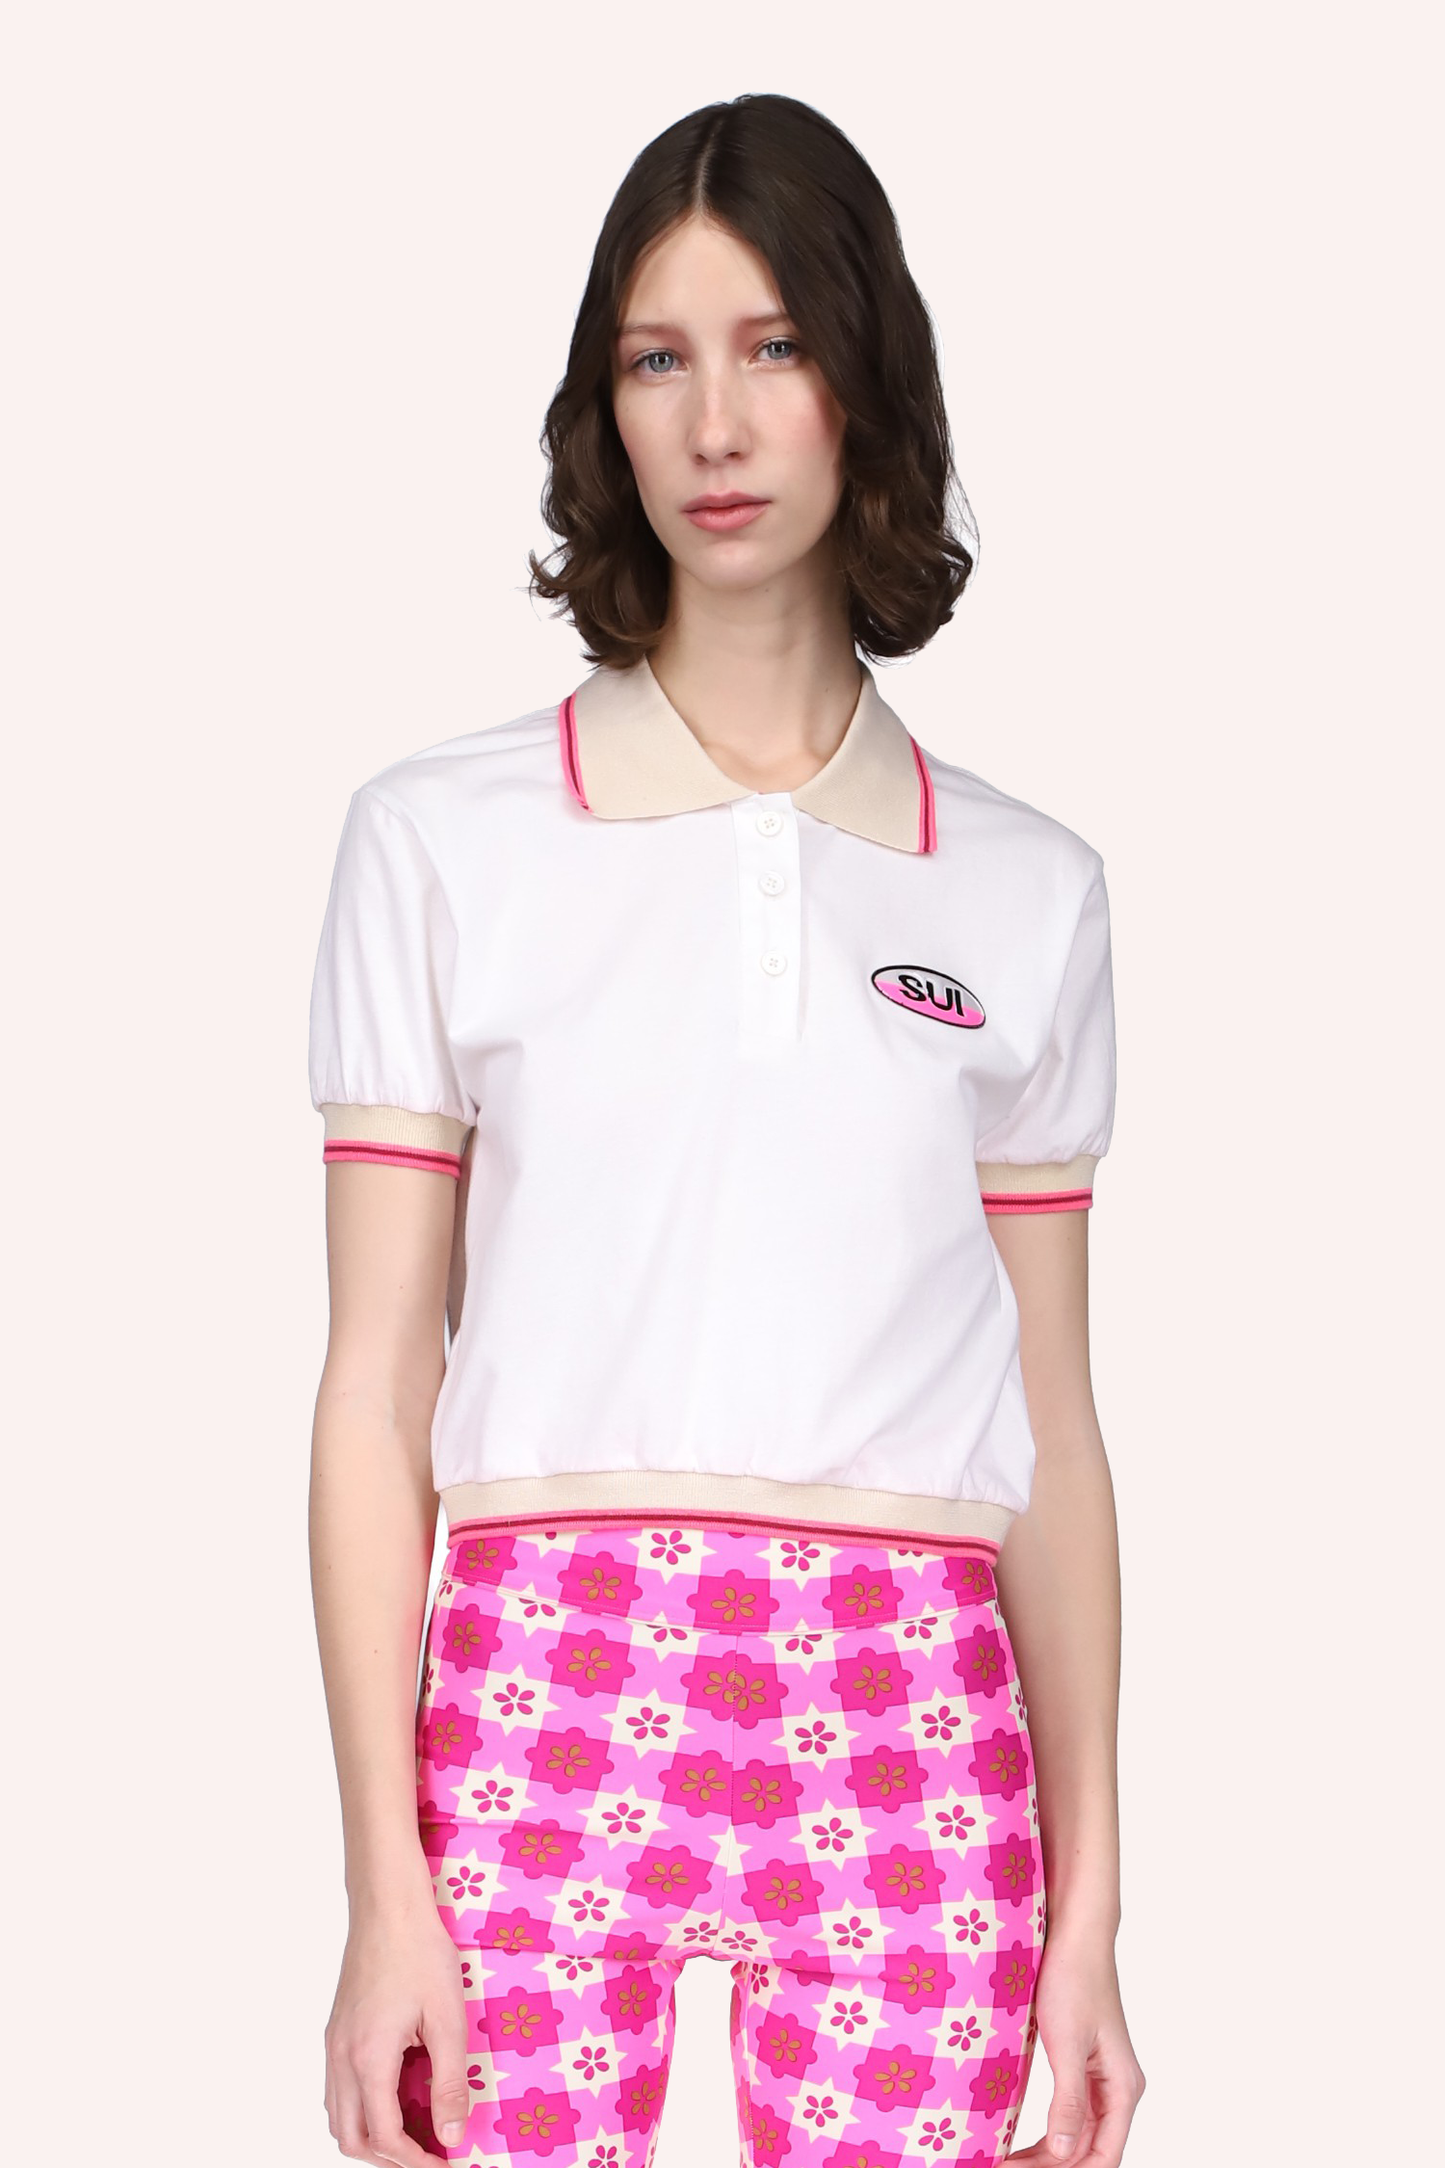 Deco Polo Top Neon Pink, tee-shirt blanc, coutures avec lignes beiges et roses, étiquette SUI à gauche